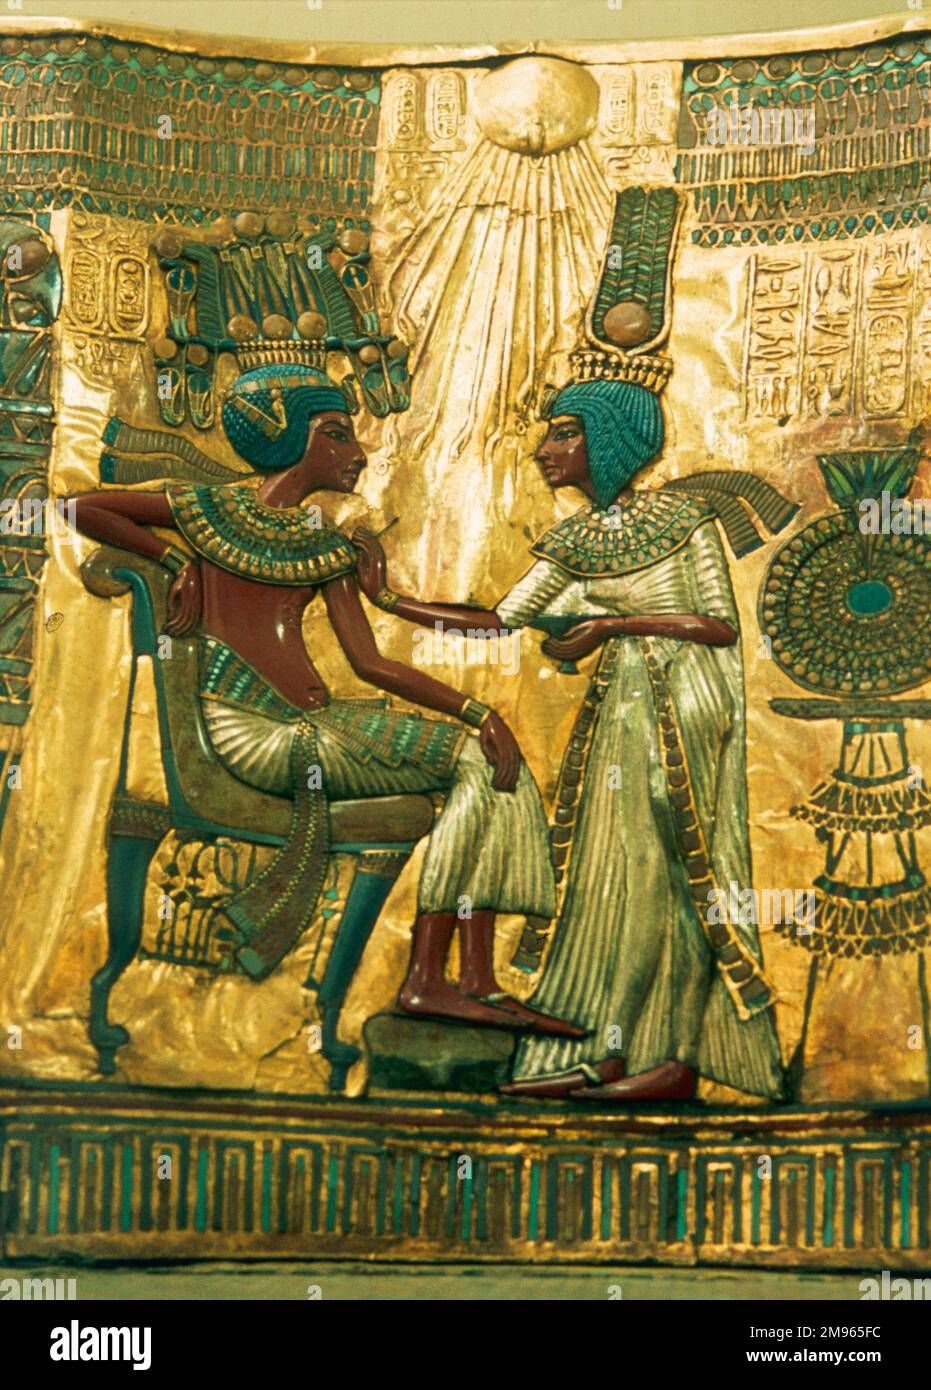 Le dos d'or du trône de Pharoah TOUTANKHAMUN dirigeant de la dynastie 18th de l'Égypte 1361 - 1352 av. J.-C. (Musée égyptien, le Caire). Banque D'Images